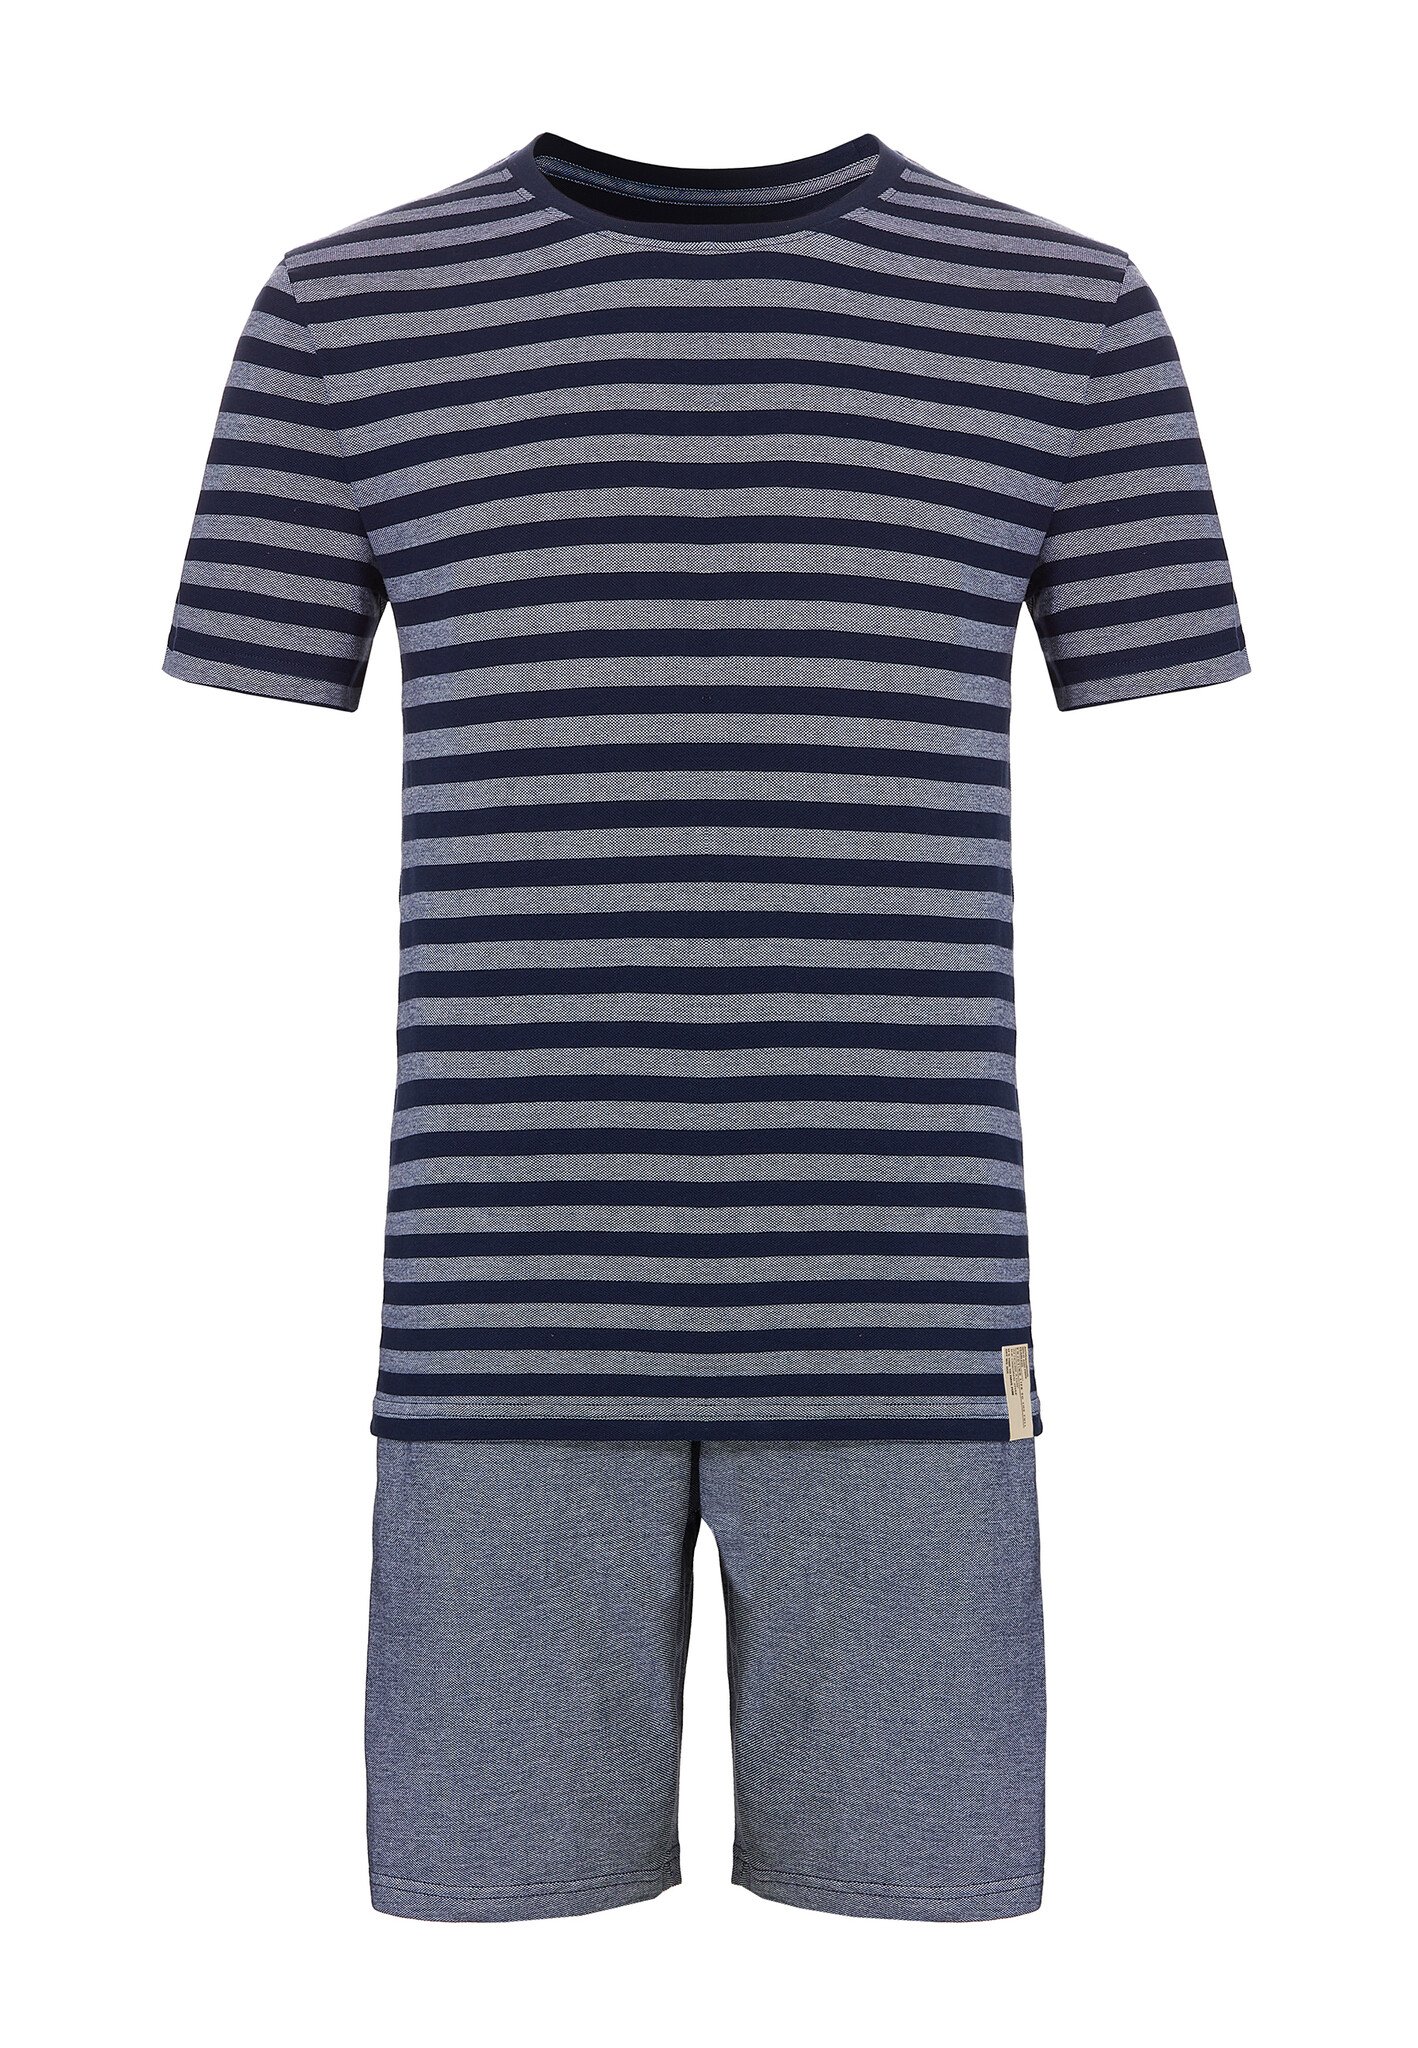 Afbeelding van Phil & Co Heren shortama korte pyjama katoen blauw / grijs gestreept